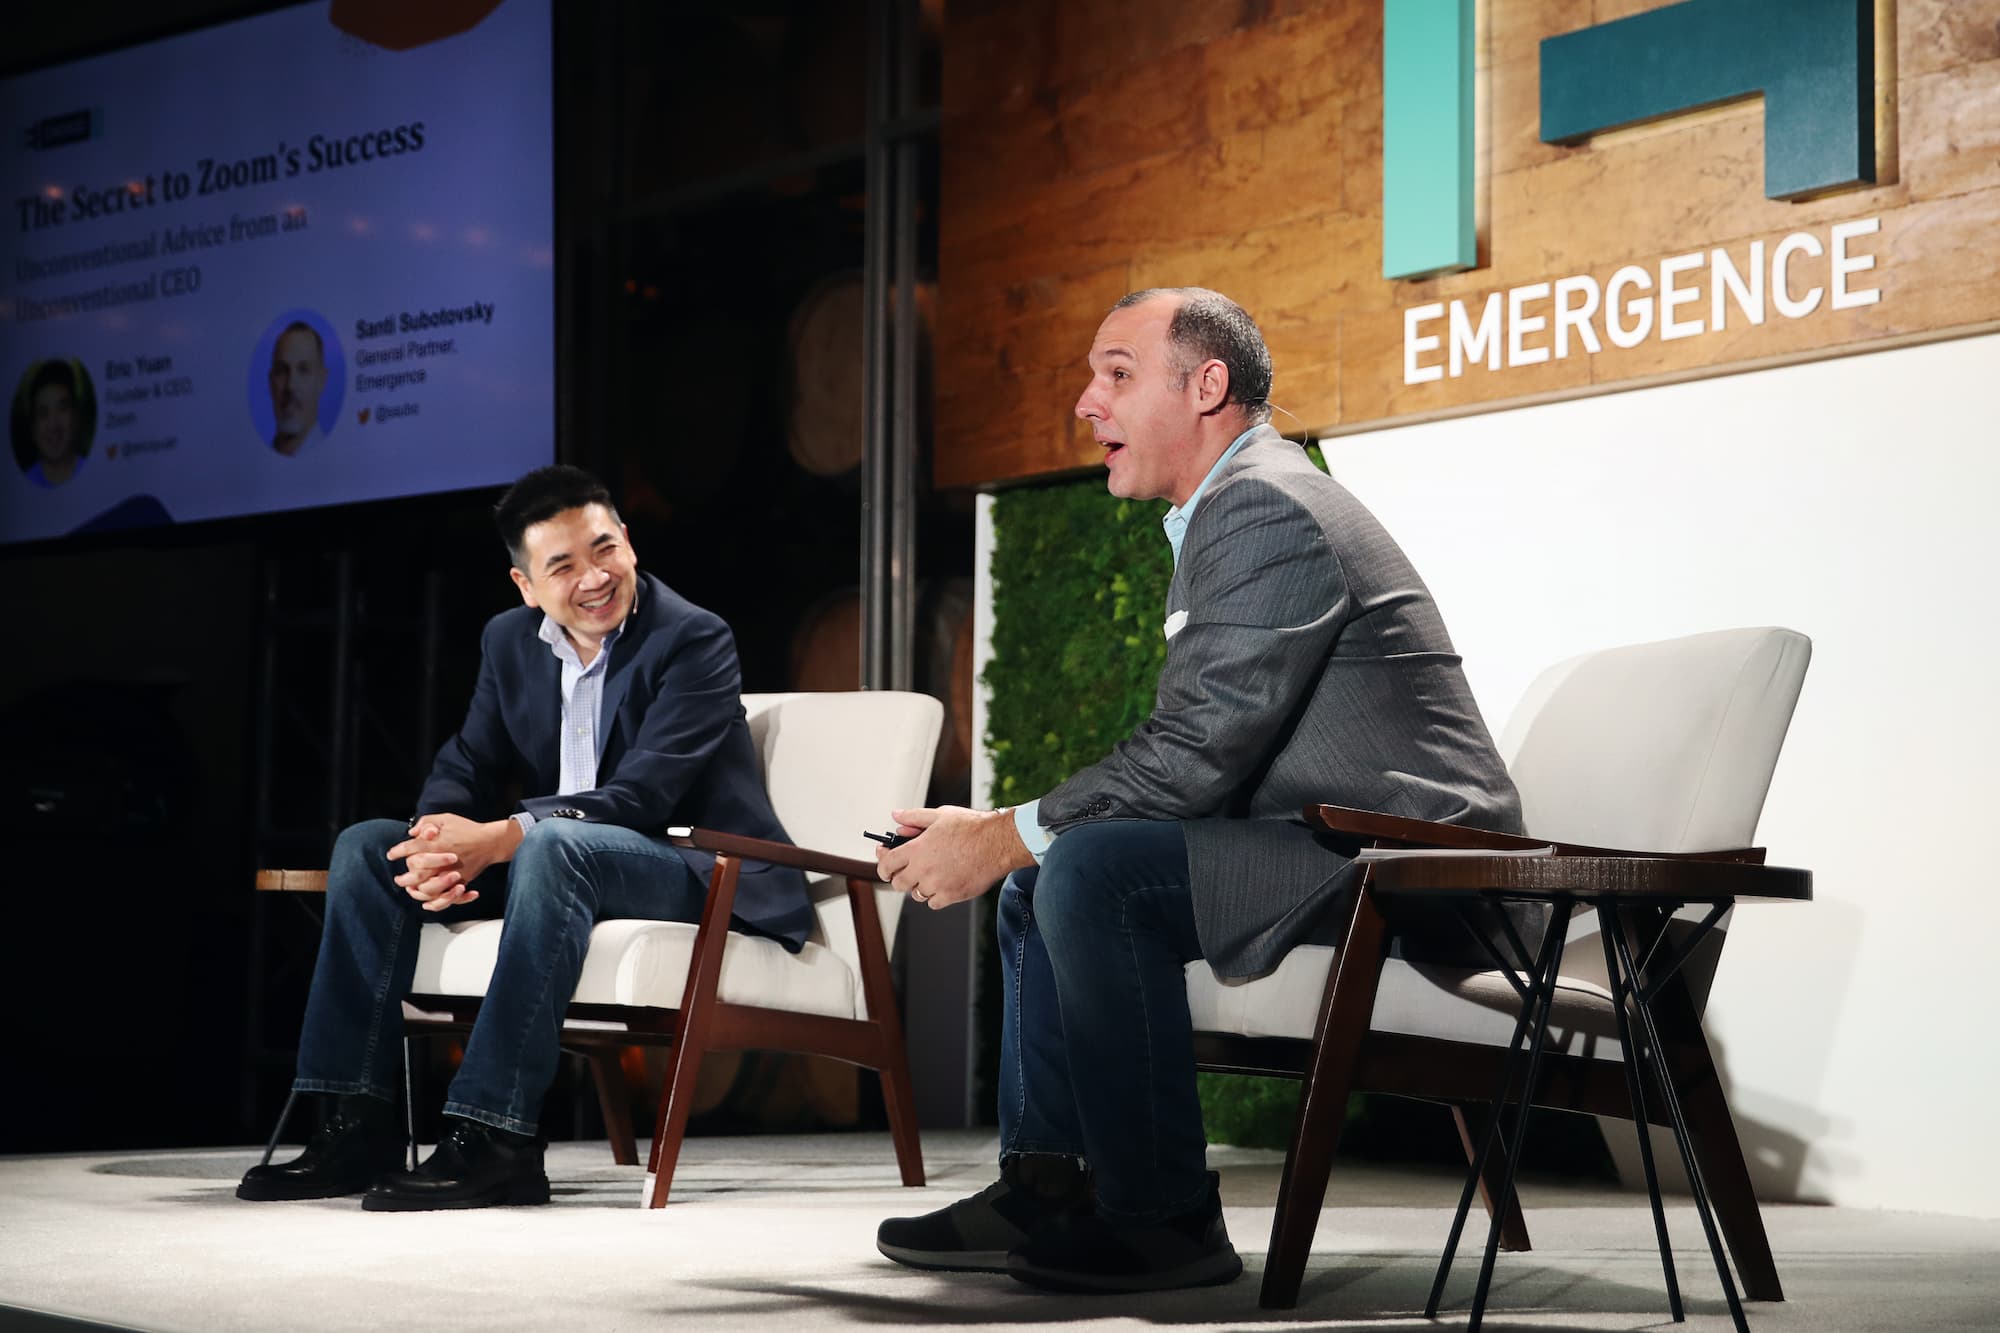 Subotovsky con Eric Yuan, fundador de Zoom durante el CEO Sumit de Emergence